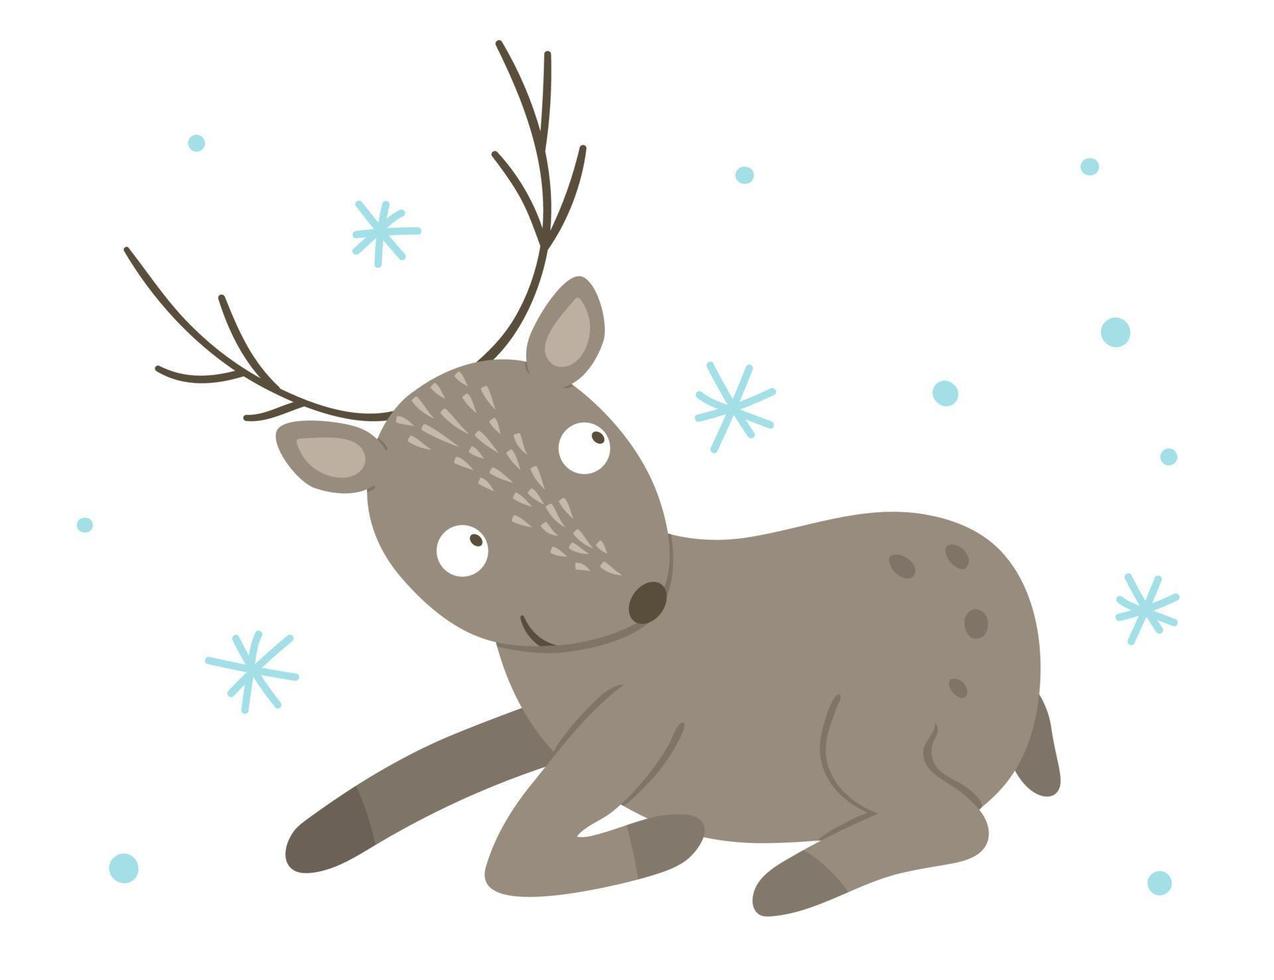 vektor handritad platt rådjur med snöflingor. rolig vinter scen med skogsdjur. söt skog animalistisk illustration för tryck, pappersvaror